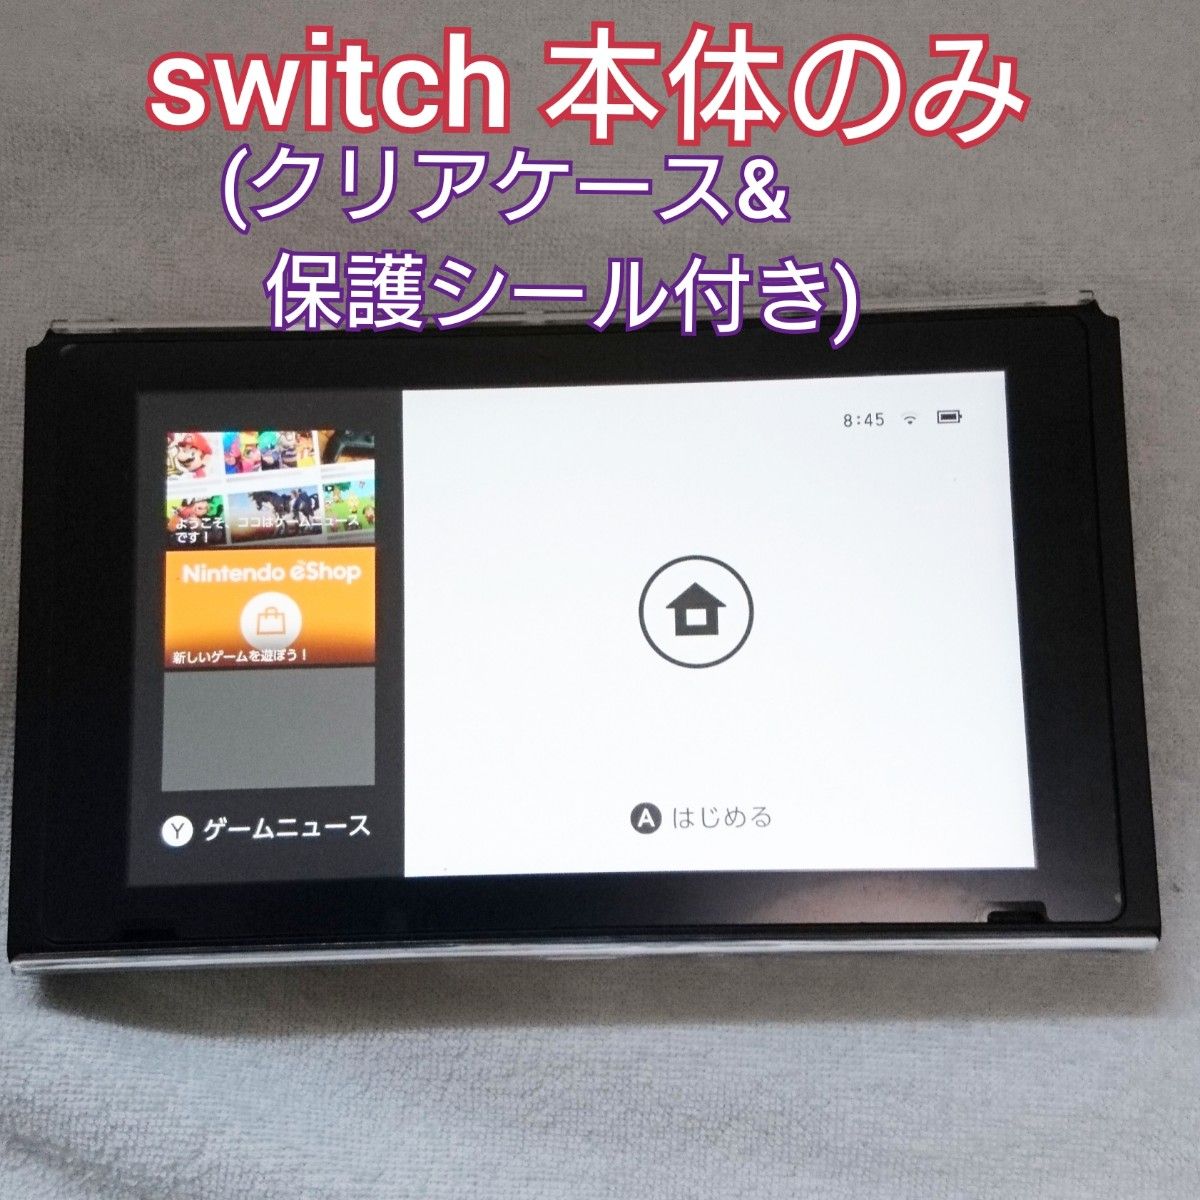 Nintendo Switch ニンテンドースイッチ 液晶 バッテリー強化版 本体のみ (クリアカバー&保護シール付き)